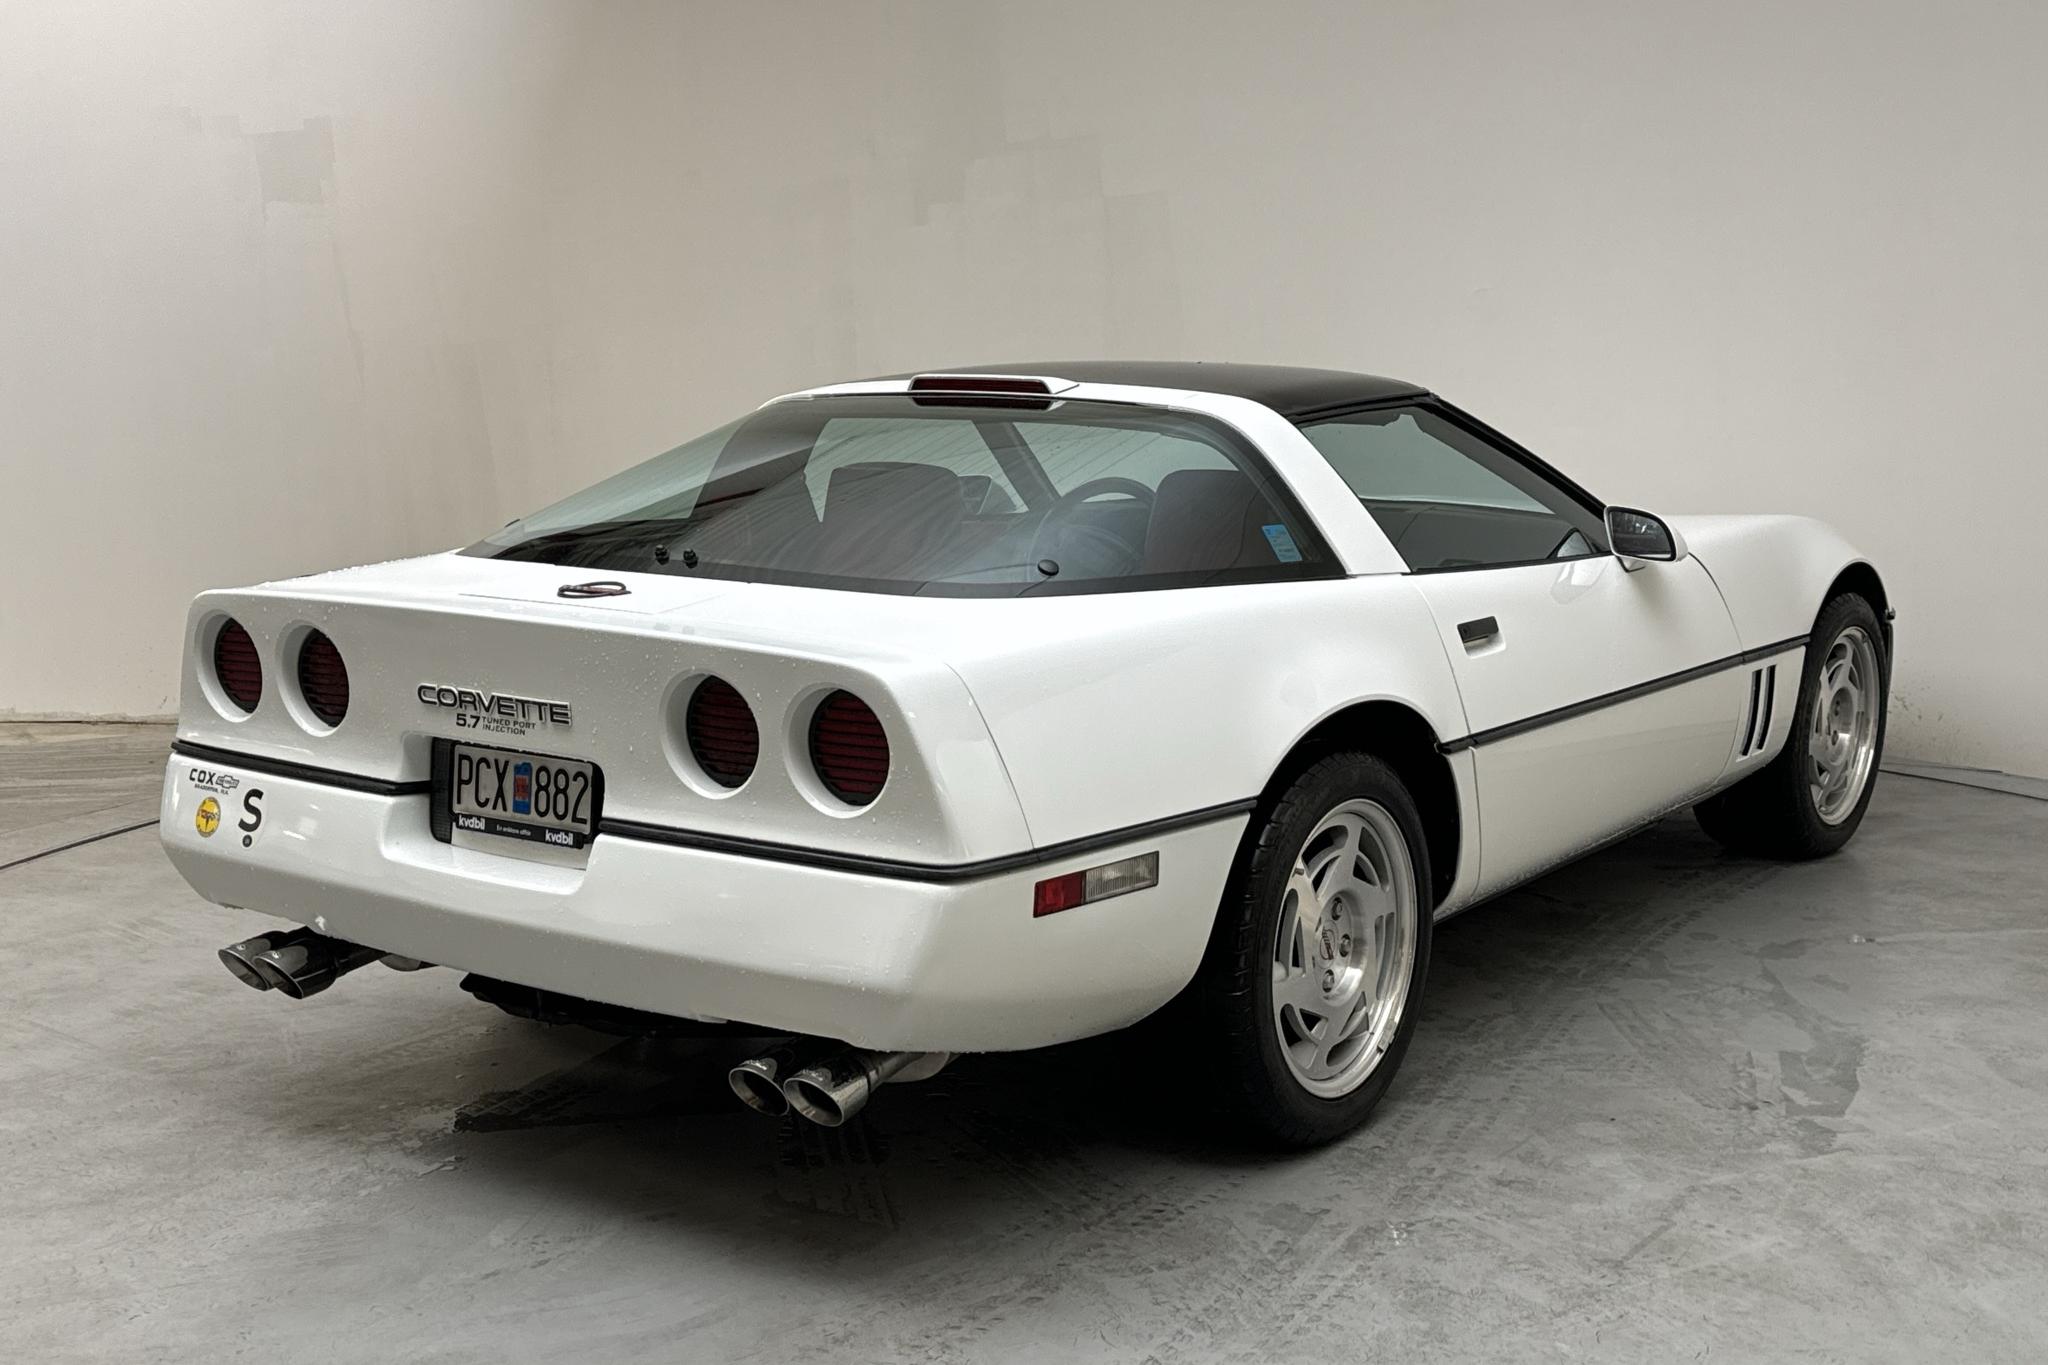 Chevrolet Corvette 5.7 TPI, C4 (249hk) - 33 630 km - Automatic - white - 1990